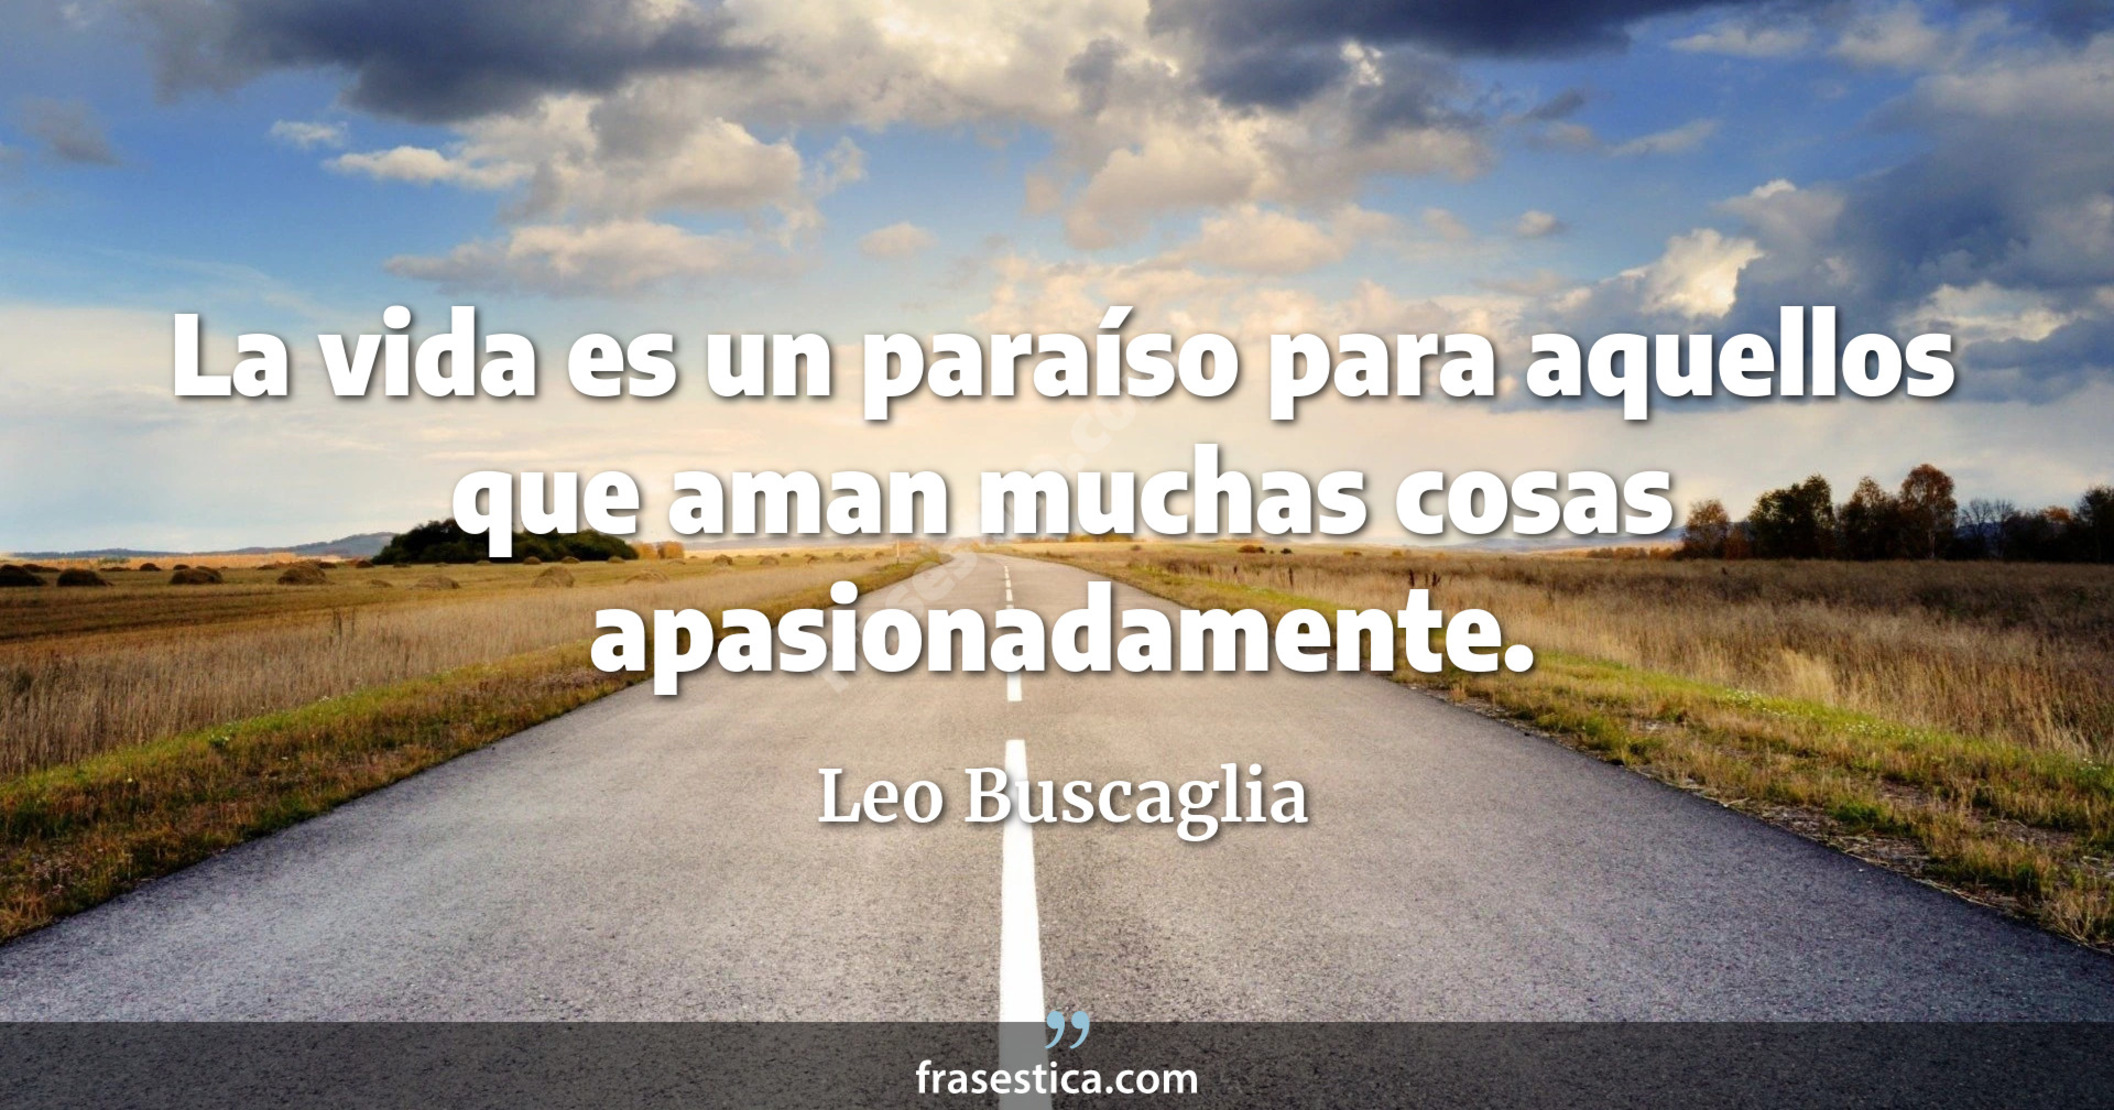 La vida es un paraíso para aquellos que aman muchas cosas apasionadamente. - Leo Buscaglia